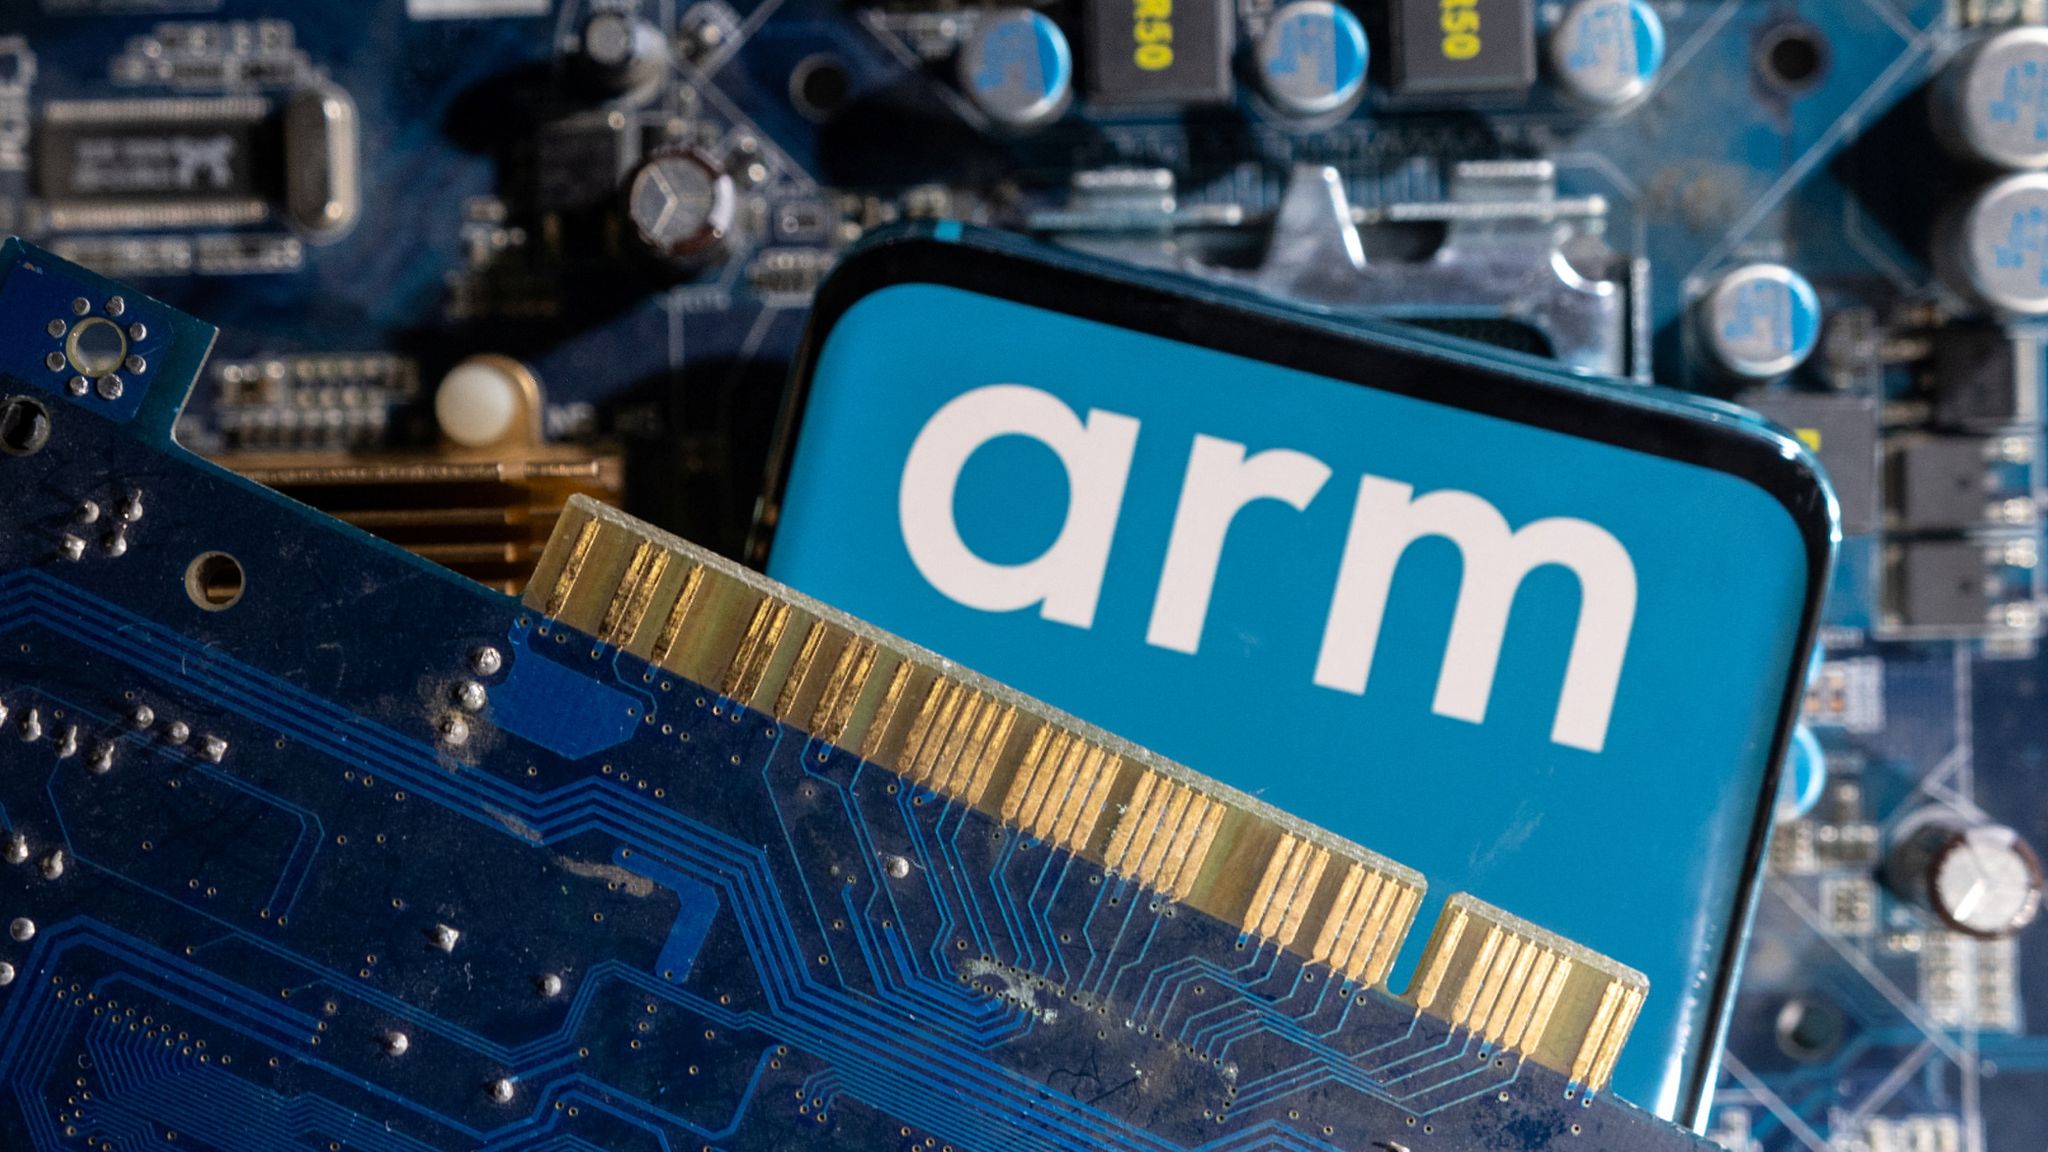 Виробник чіпів ARM провів найбільше розміщення акцій за рік. Компанію оцінили у $54,5 млрд